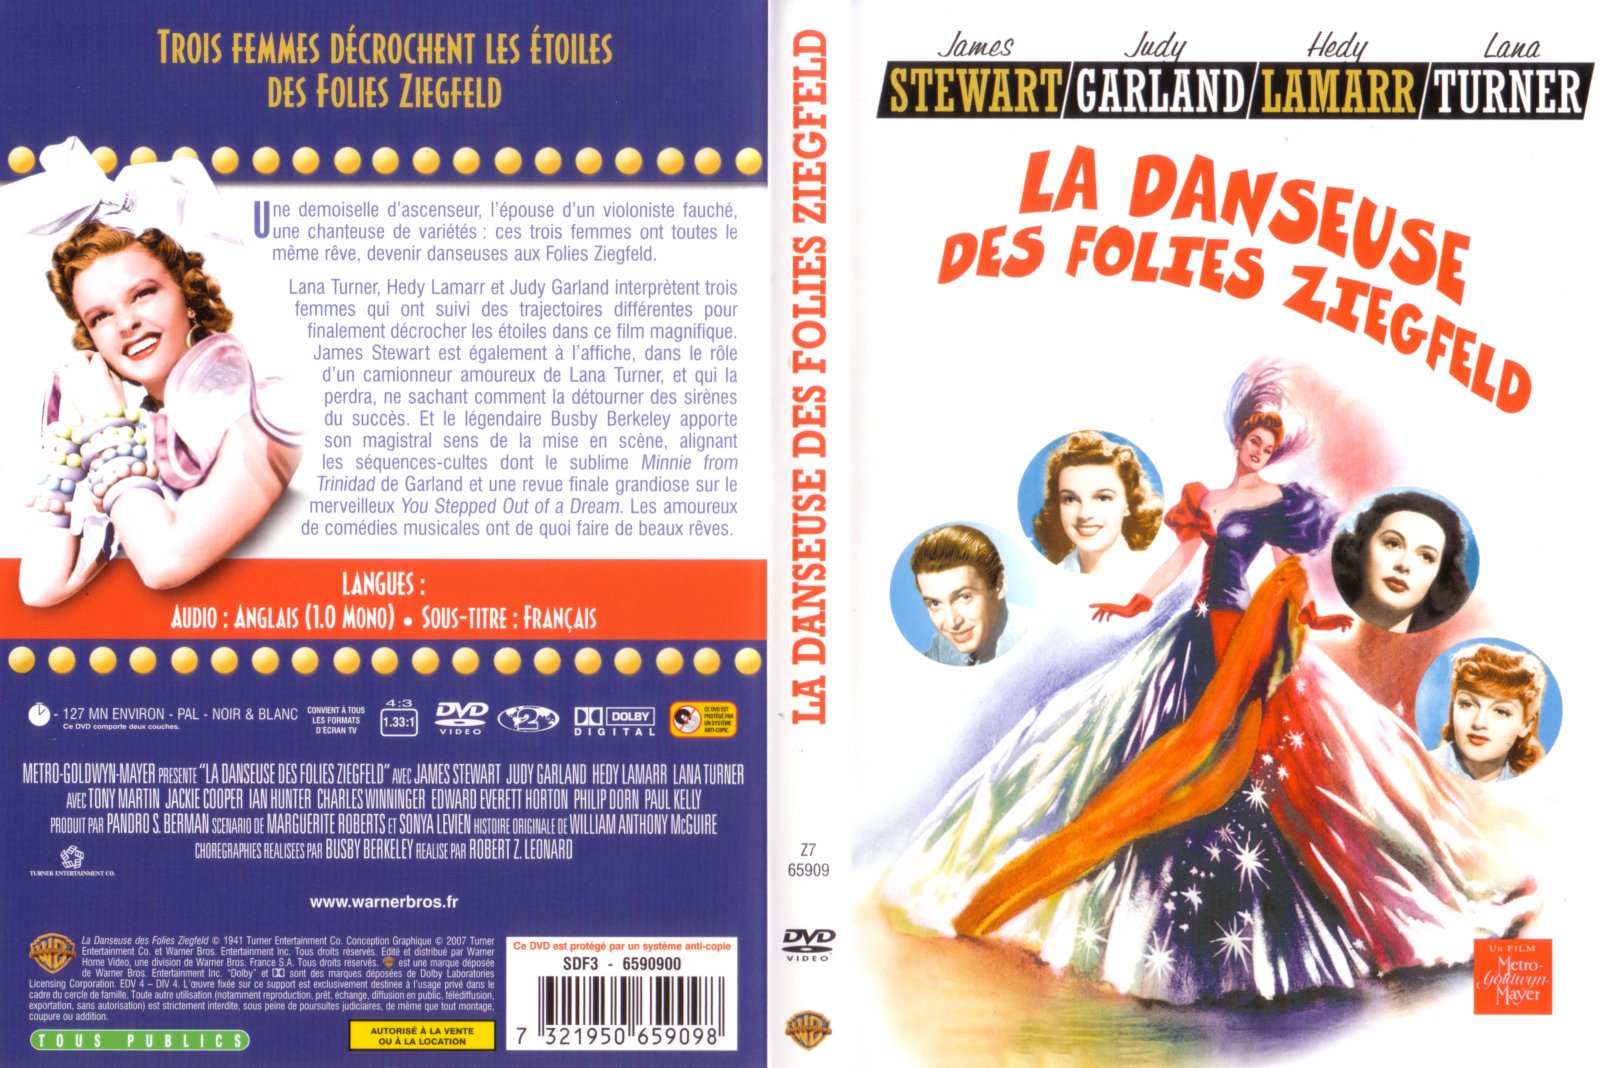 Jaquette DVD La danseuse des folies Ziegfeld